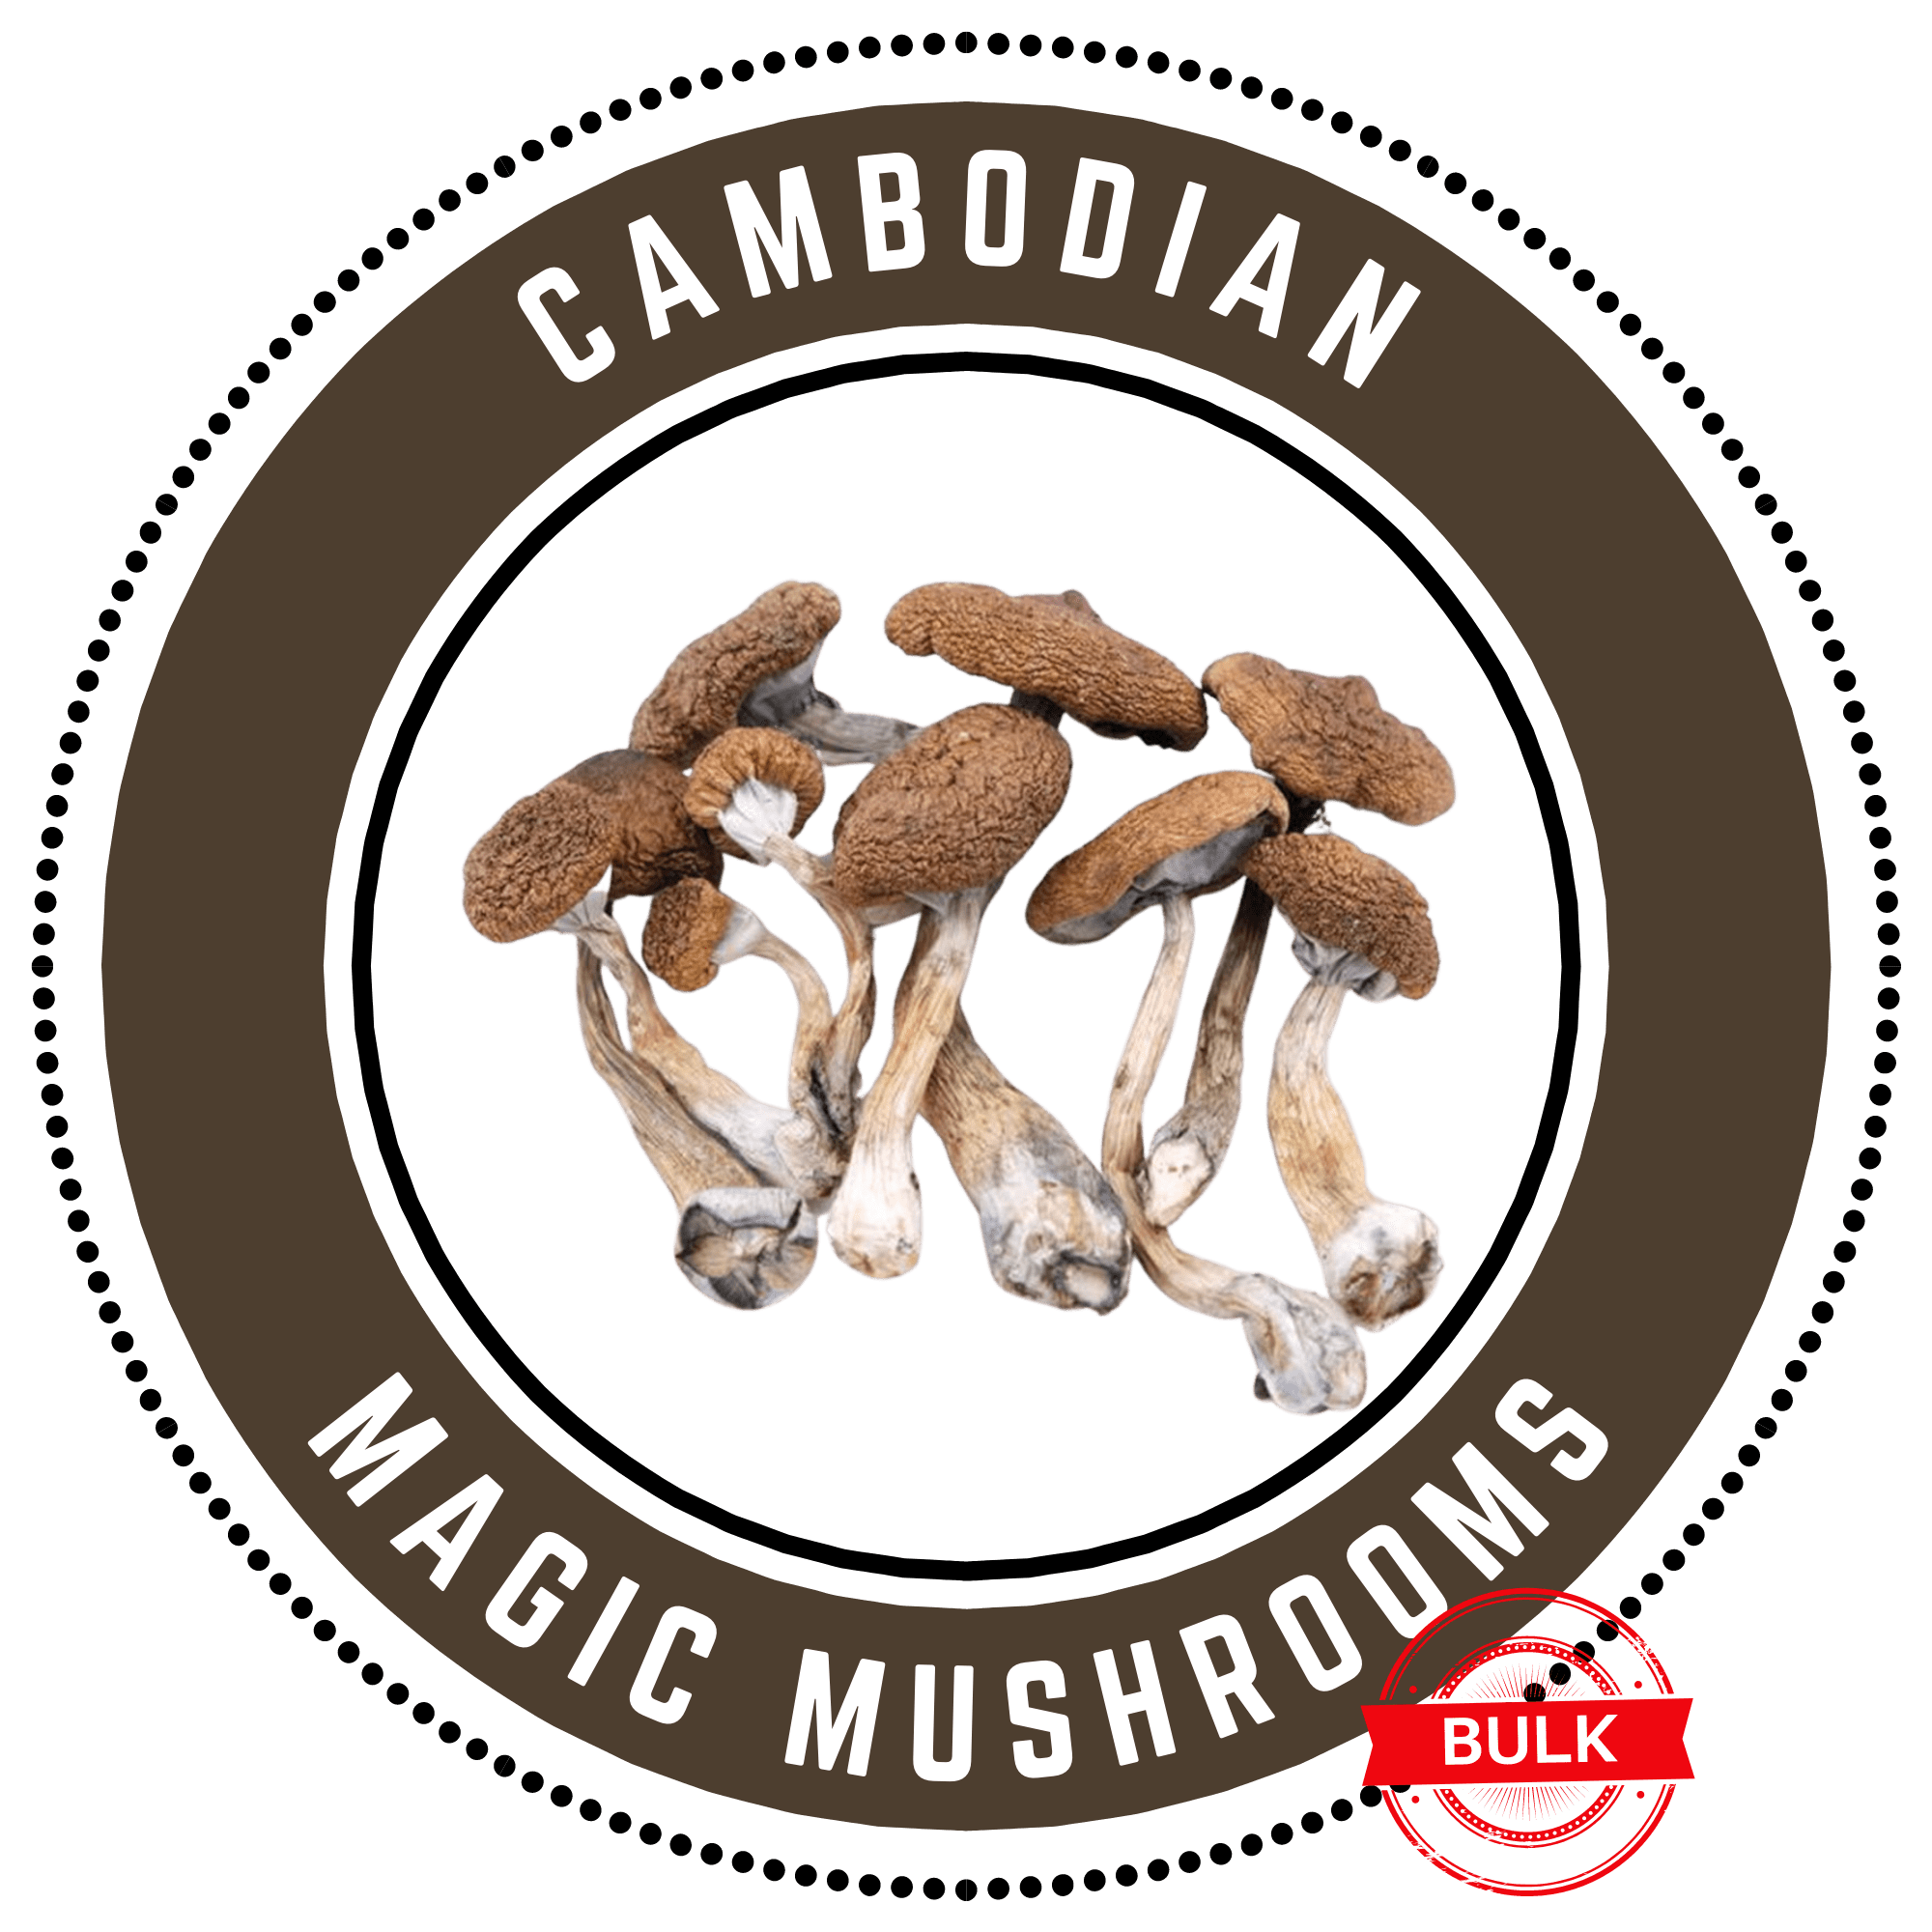 Buy Bulk Magic Mushrooms Online in Canada